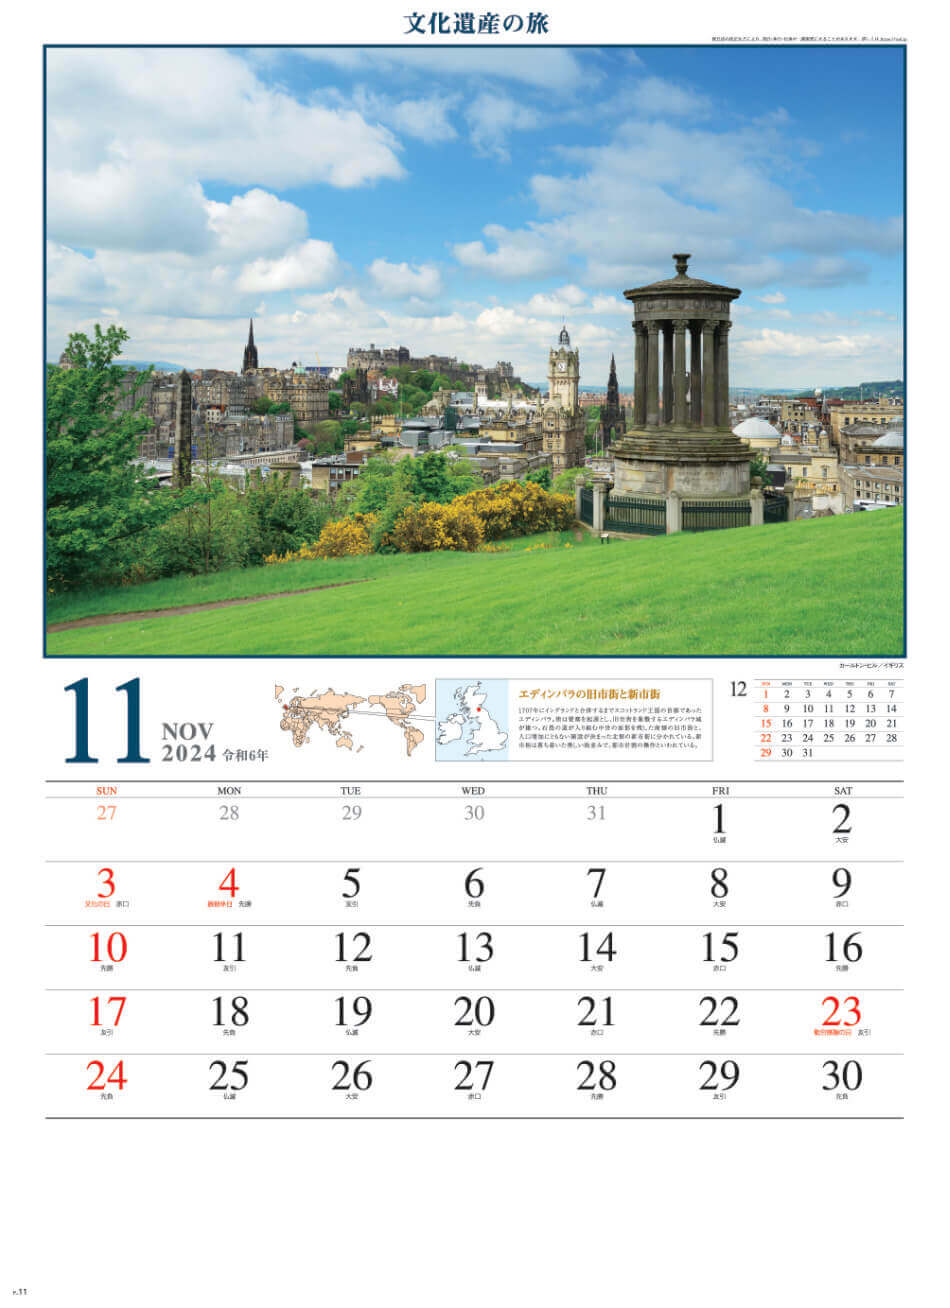 カールトン・ヒル(イギリス) 文化遺産の旅(ユネスコ世界遺産) 2024年カレンダーの画像